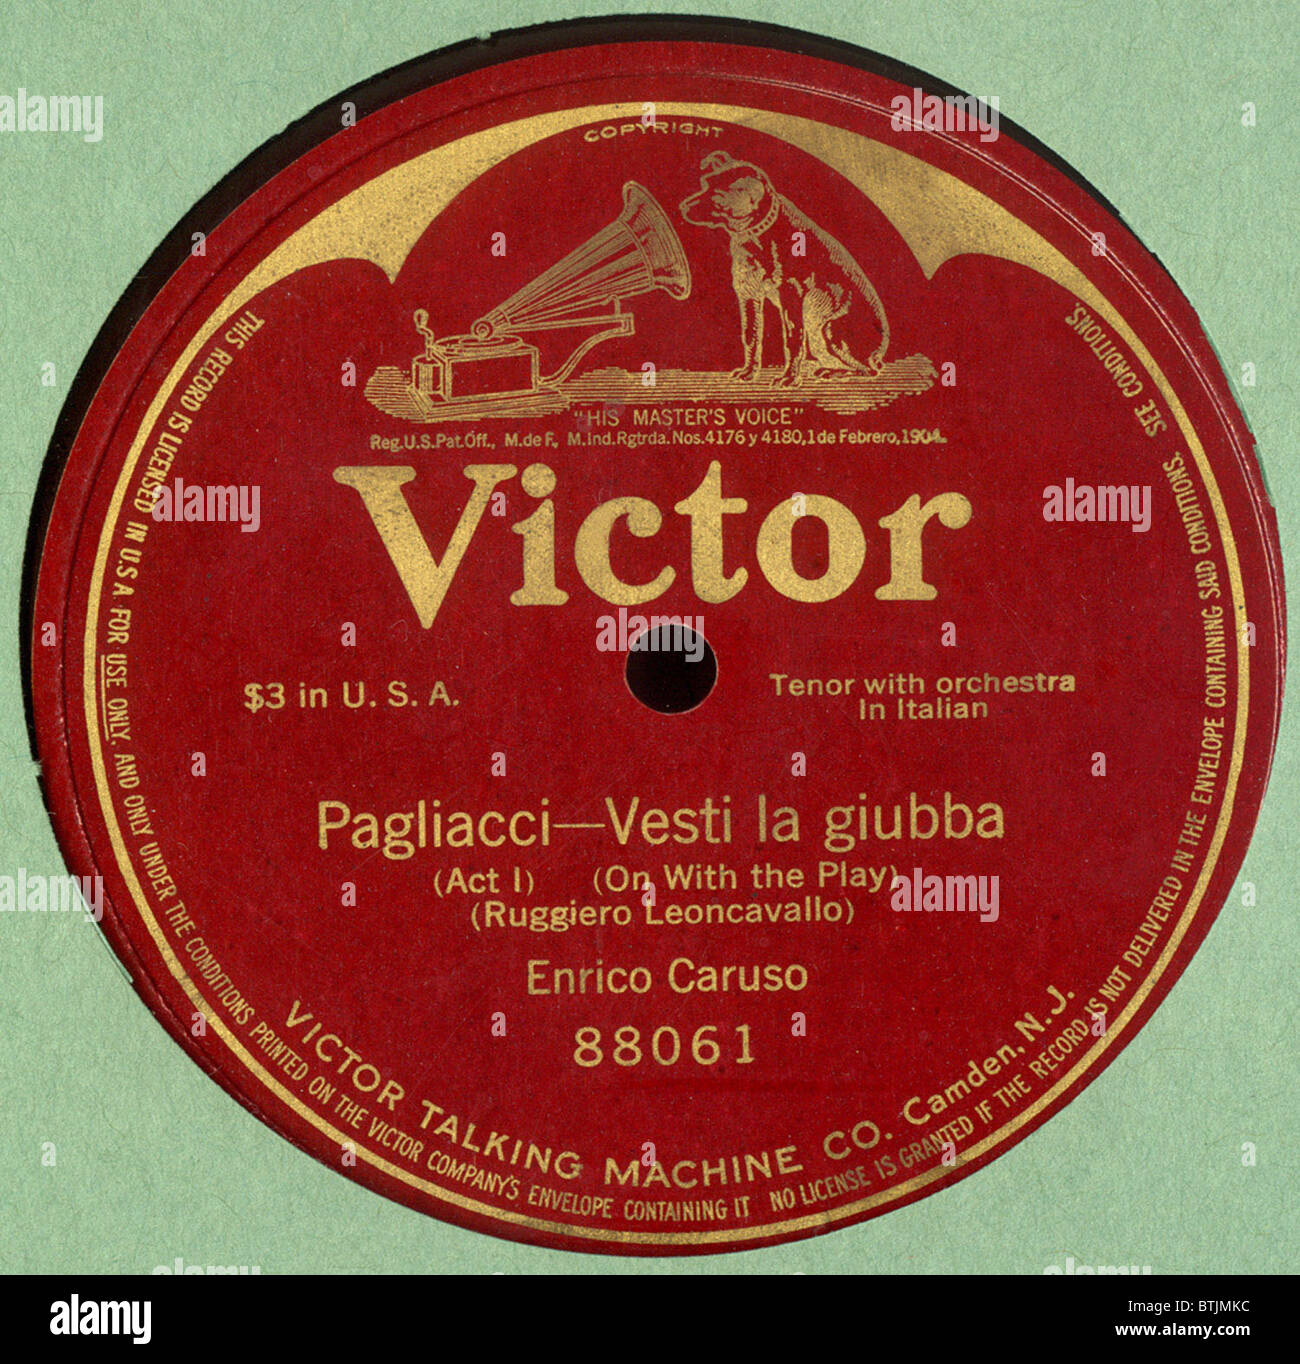 Victor record album of Enrico Caruso singing Pagliacci - Vesti La Giubba, 1907. Stock Photo